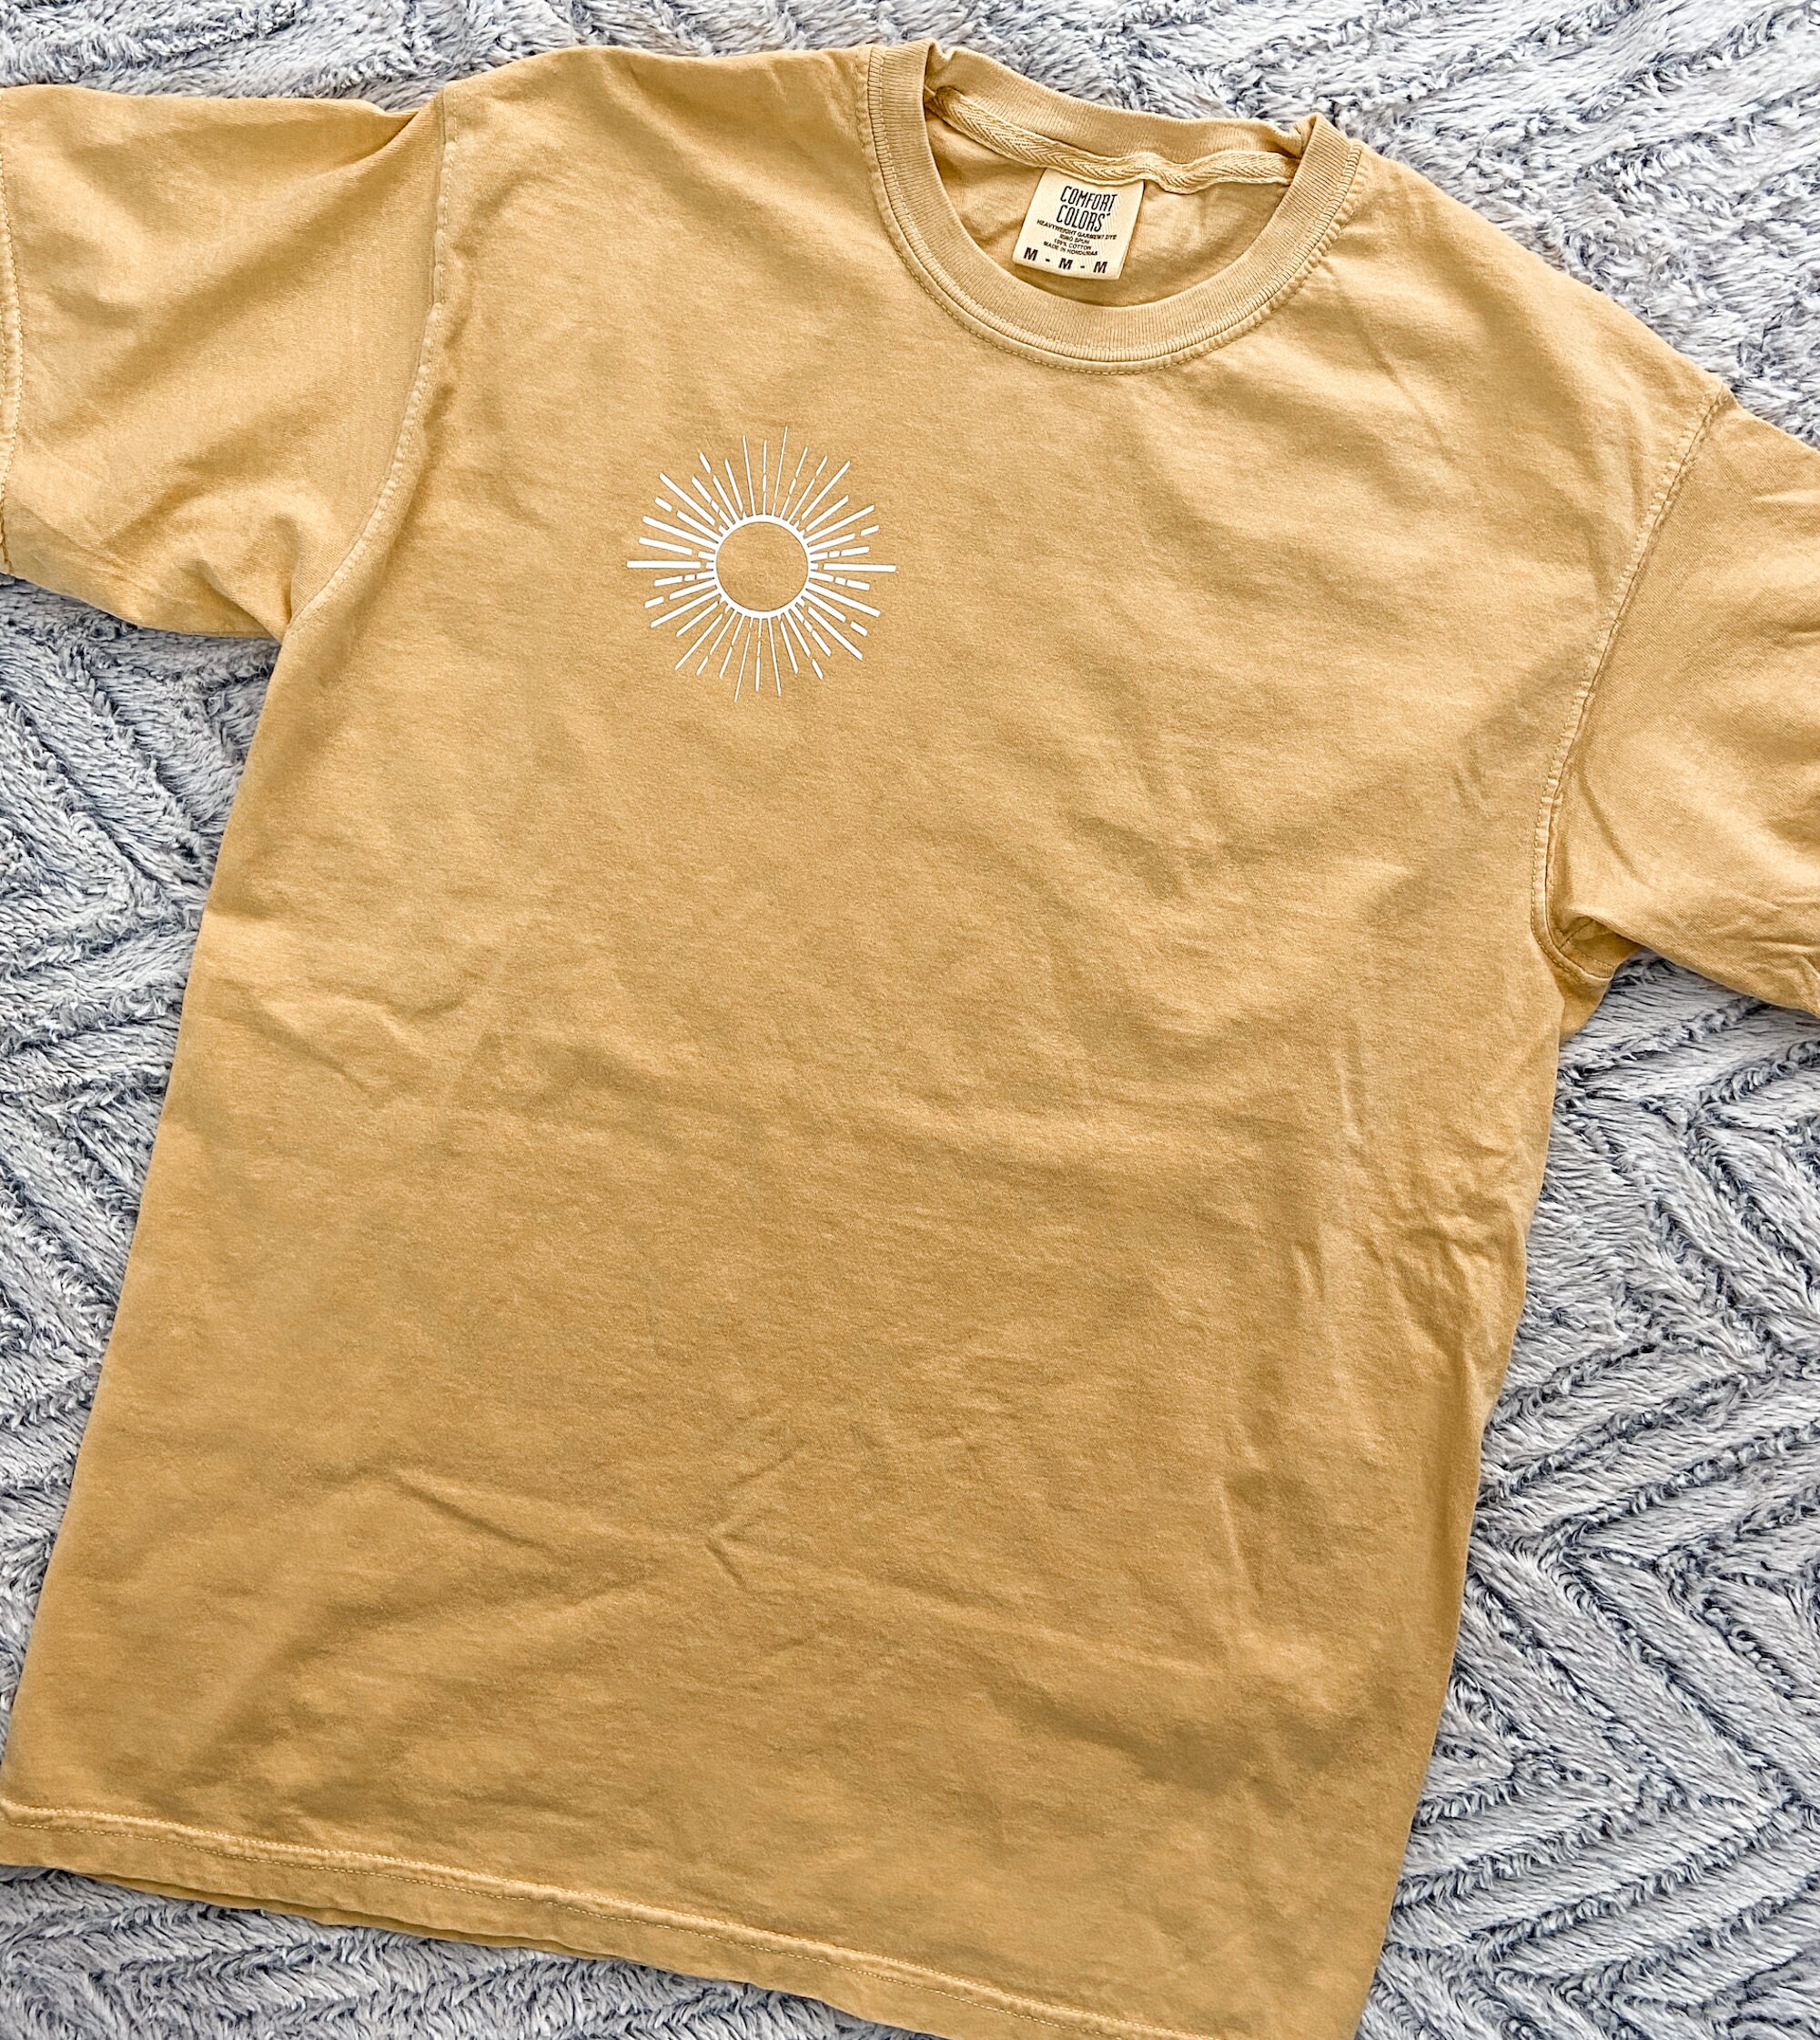 Minimalist Sun Unisex Shirt Crew Neck Sunburst Sunshine Tee | Etsy